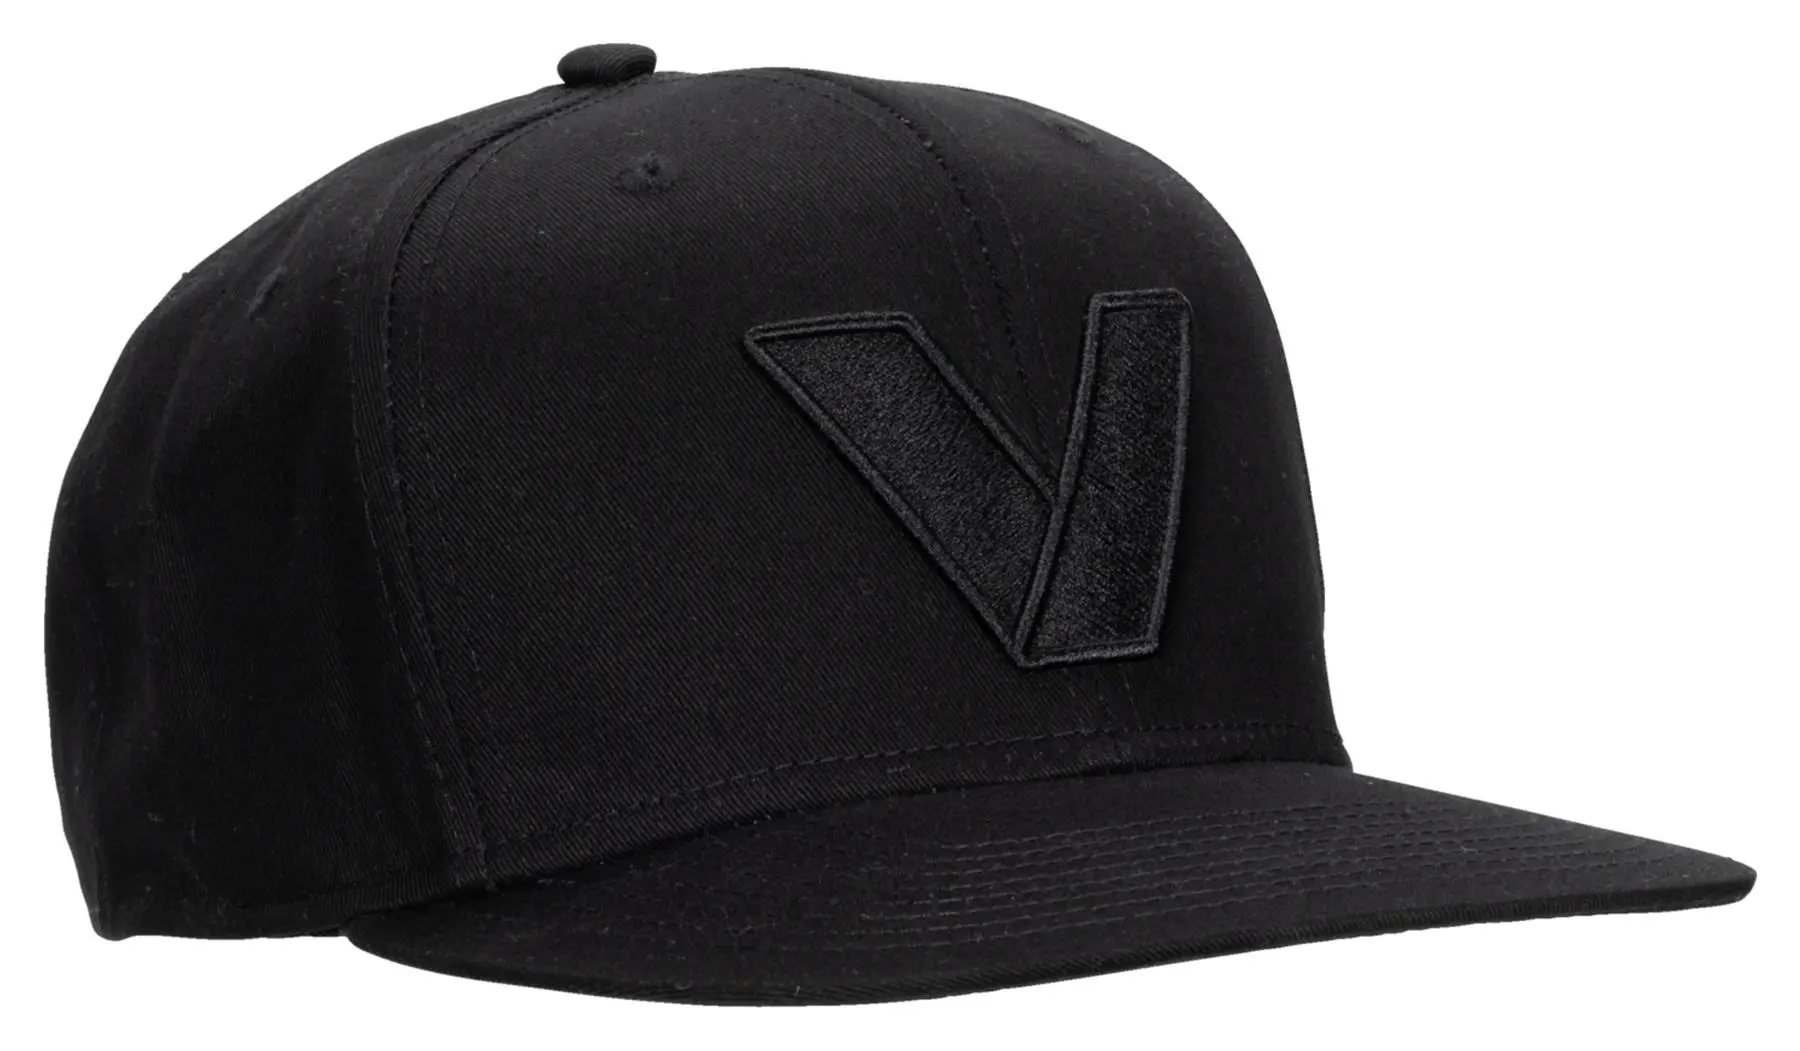 VANUCCI VXM-4 CAP CZARNY